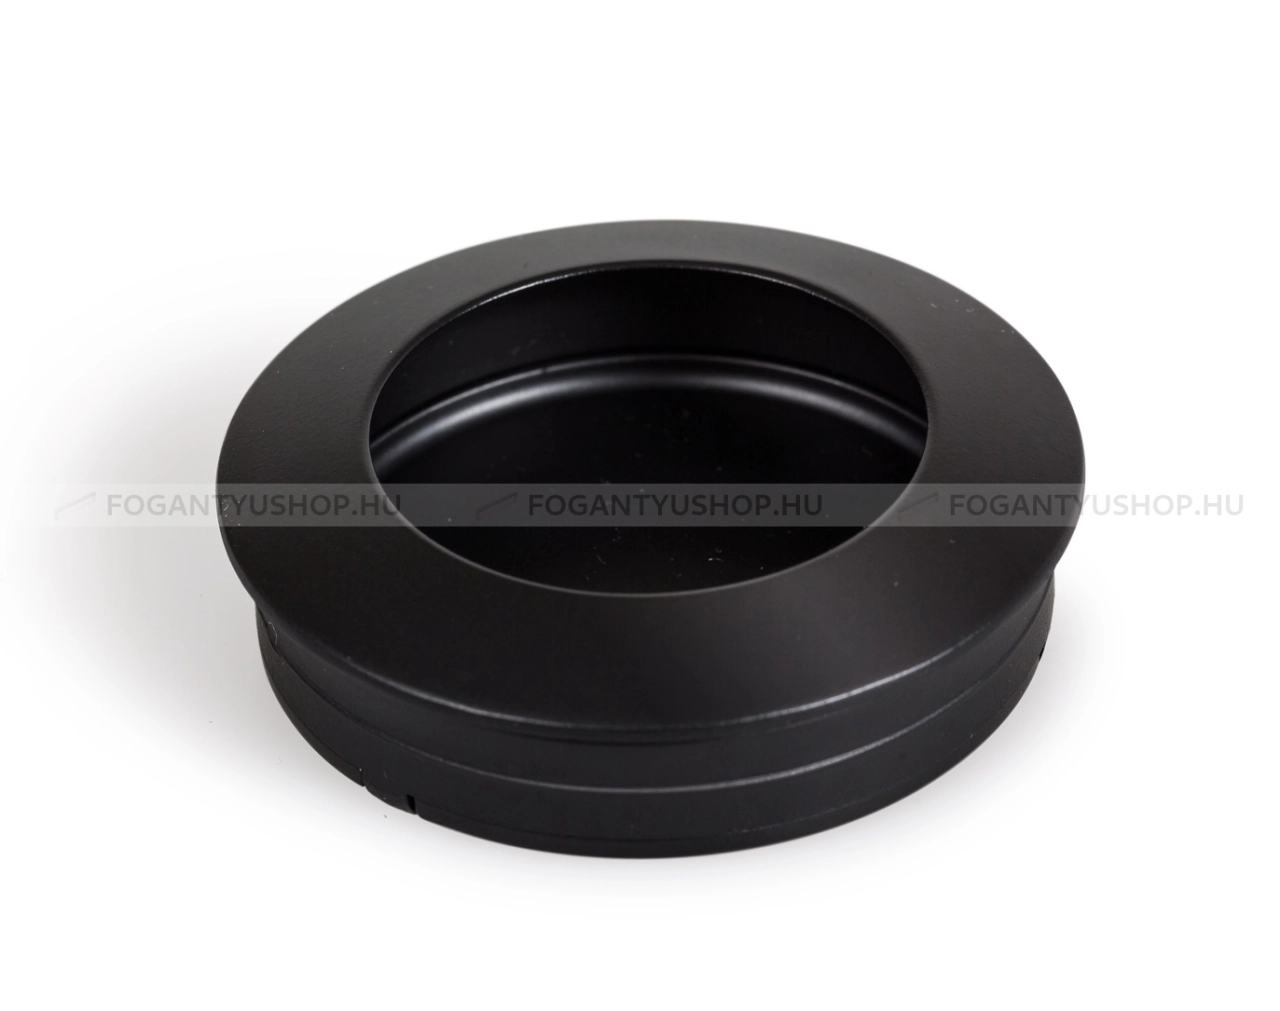 VIEFE Fogantyú HOLLOW - 60 mm (TAP) - Festett fekete - Bútorajtó felületébe marható, süllyeszthető fém fogantyú